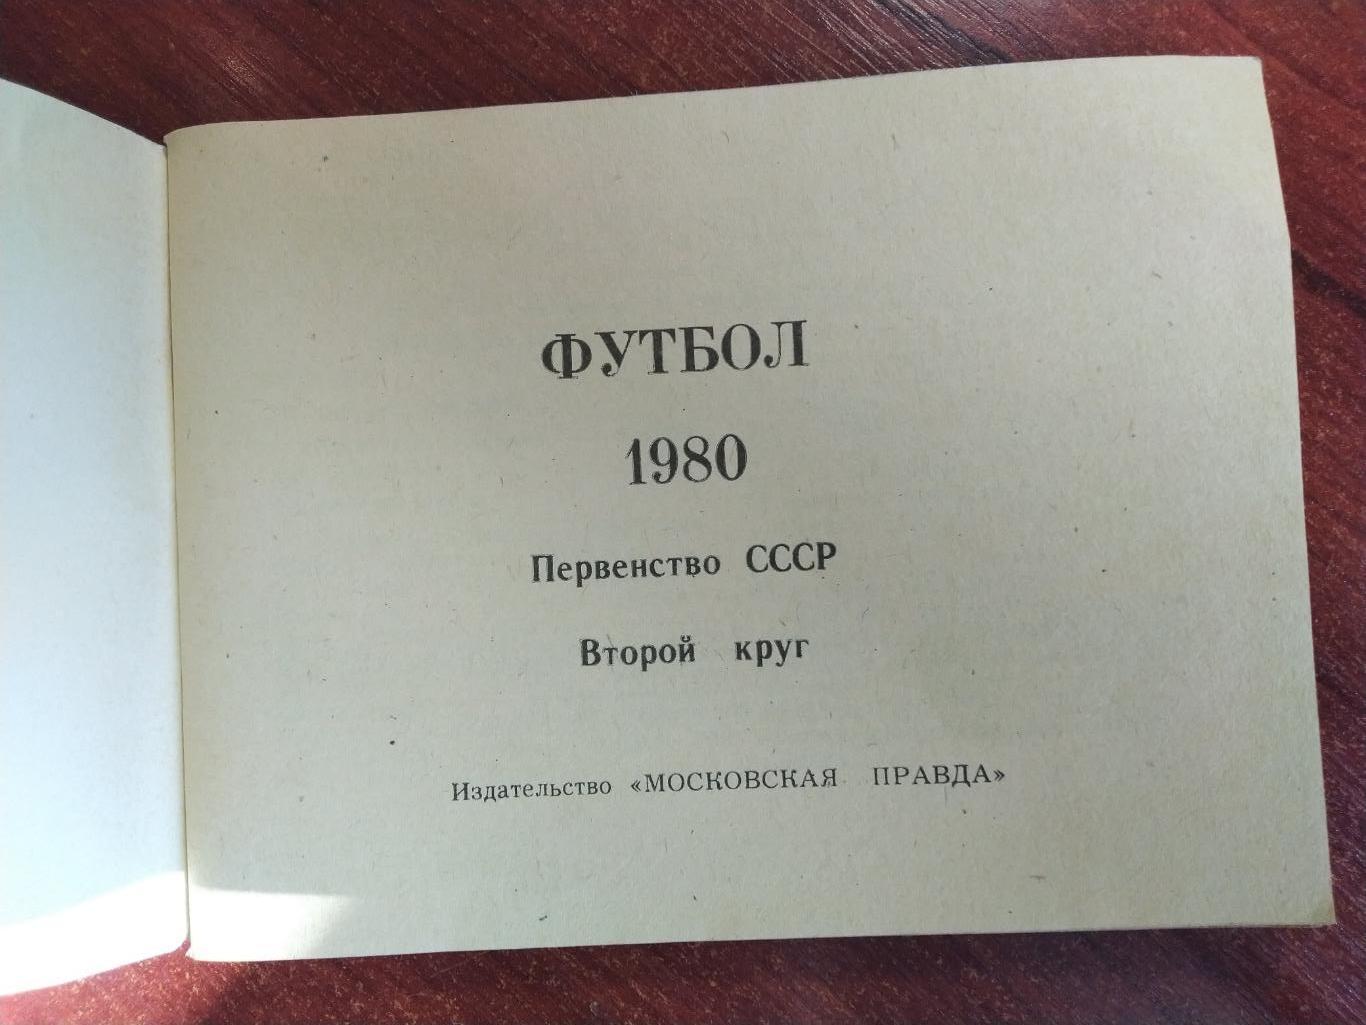 Справочник-календарь Футбол чемпионат СССР 1980 второй круг 1